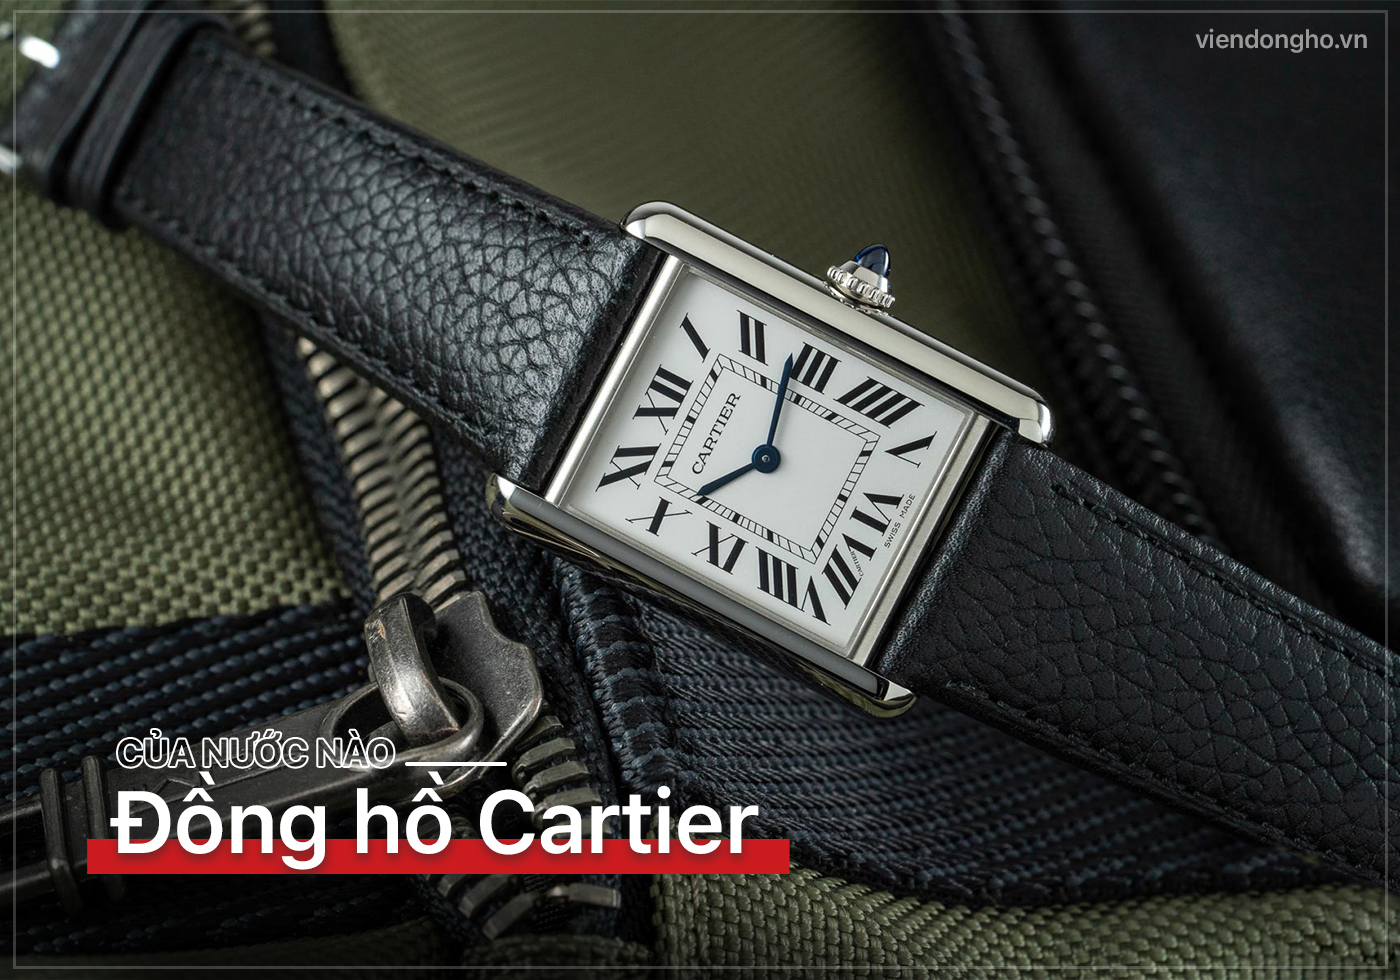 Dong ho Cartier cua nuoc nao Co dang mua khong 1